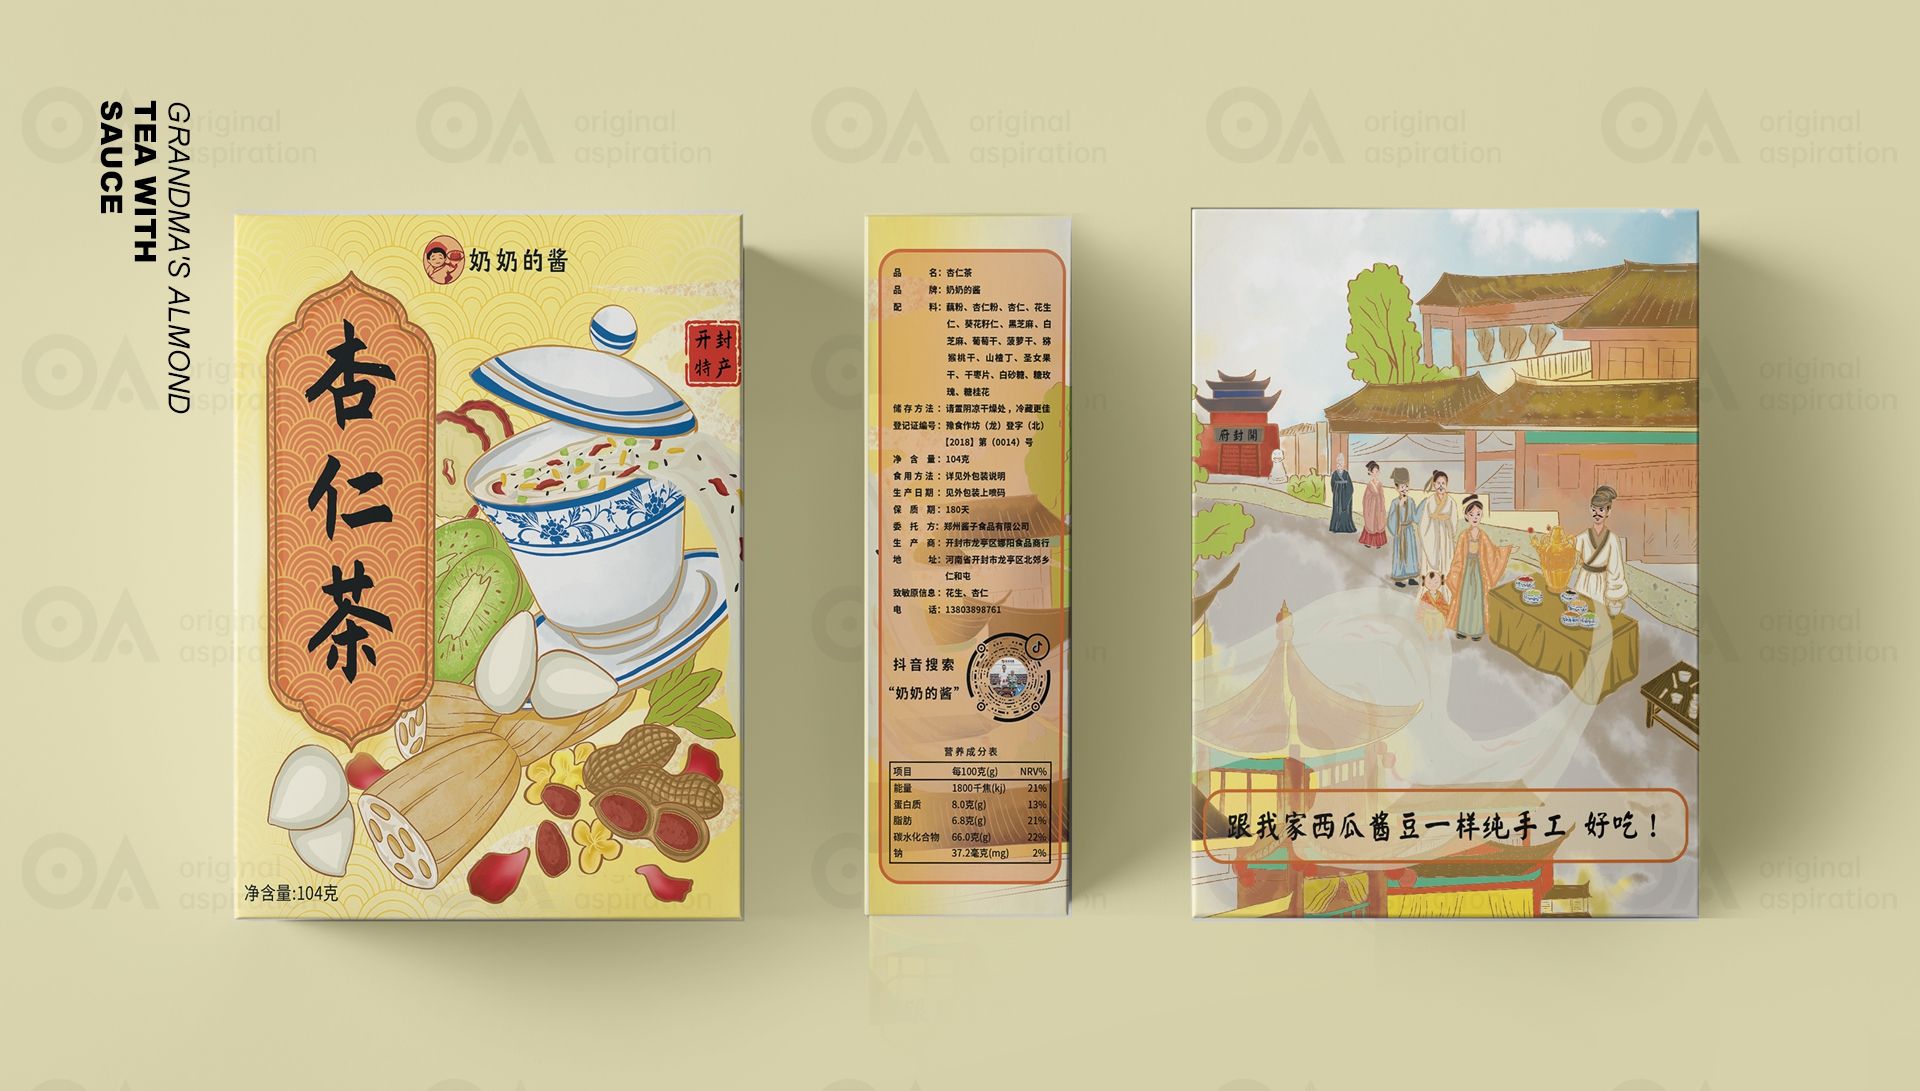 O.A.包装设计-杏仁茶 飞特网 原创食品包装设计